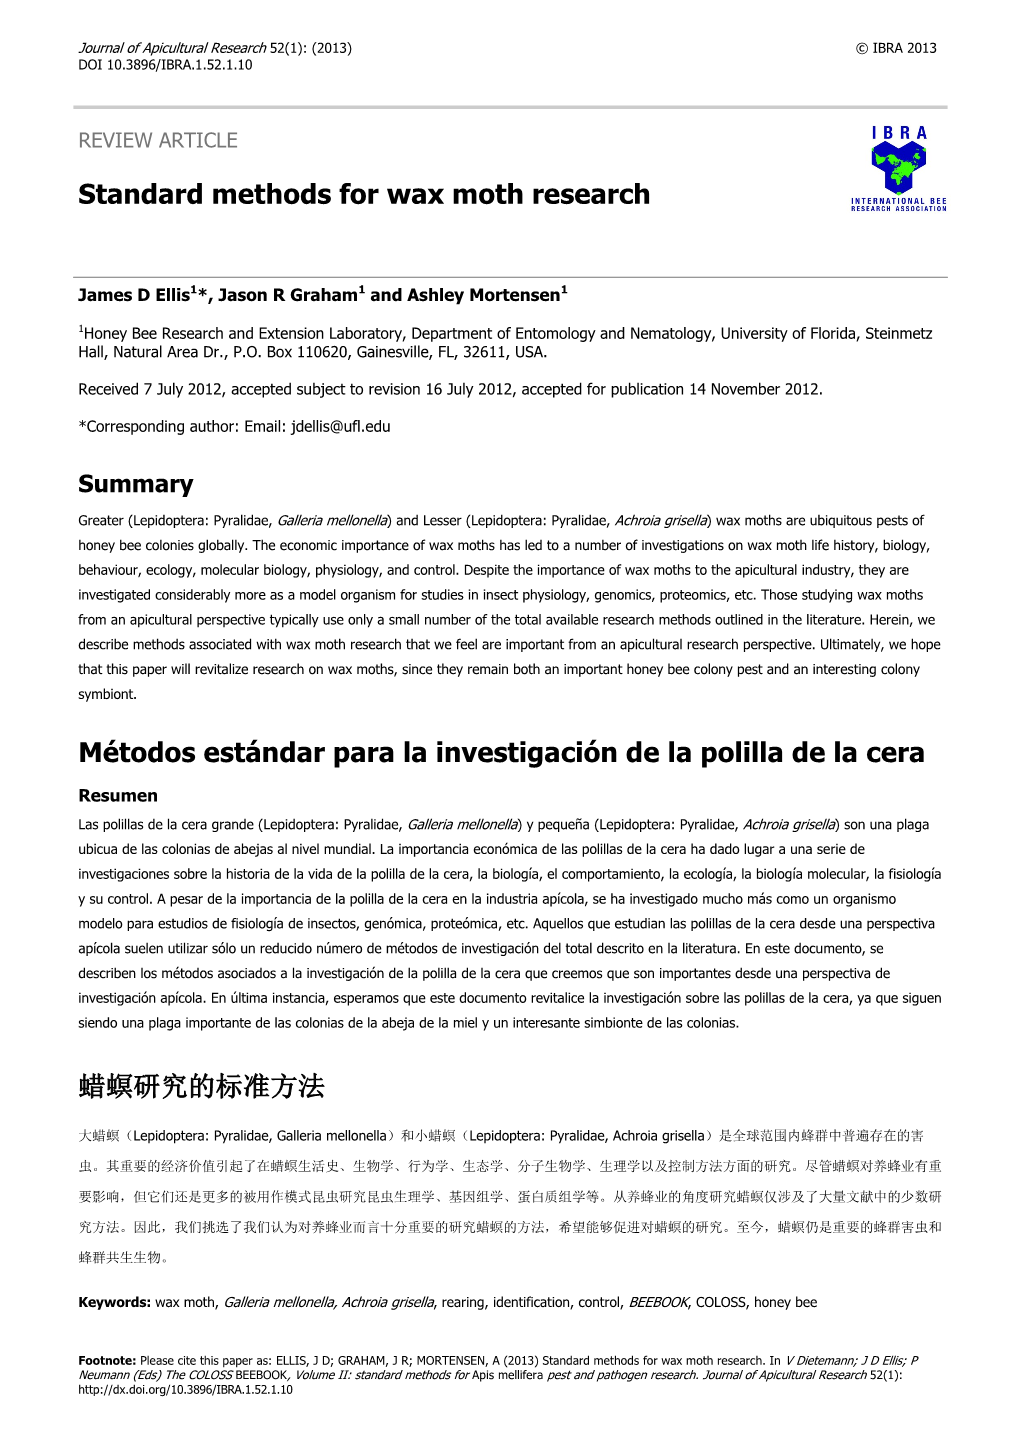 Standard Methods for Wax Moth Research Métodos Estándar Para La Investigación De La Polilla De La Cera 蜡螟研究的标准